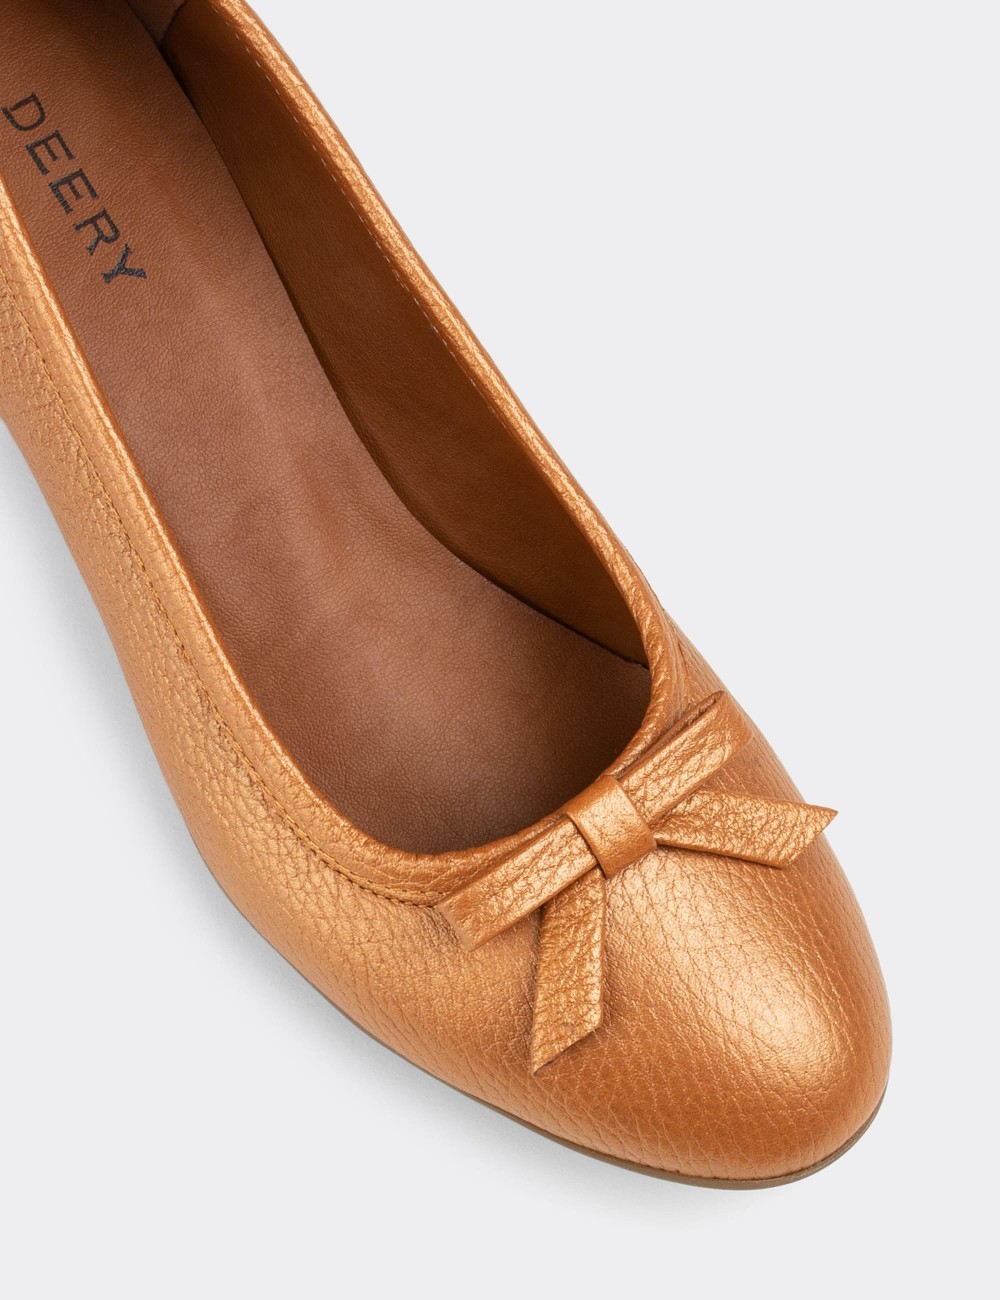 Copper  Leather Lace-up Shoes - E1471ZBKRC01